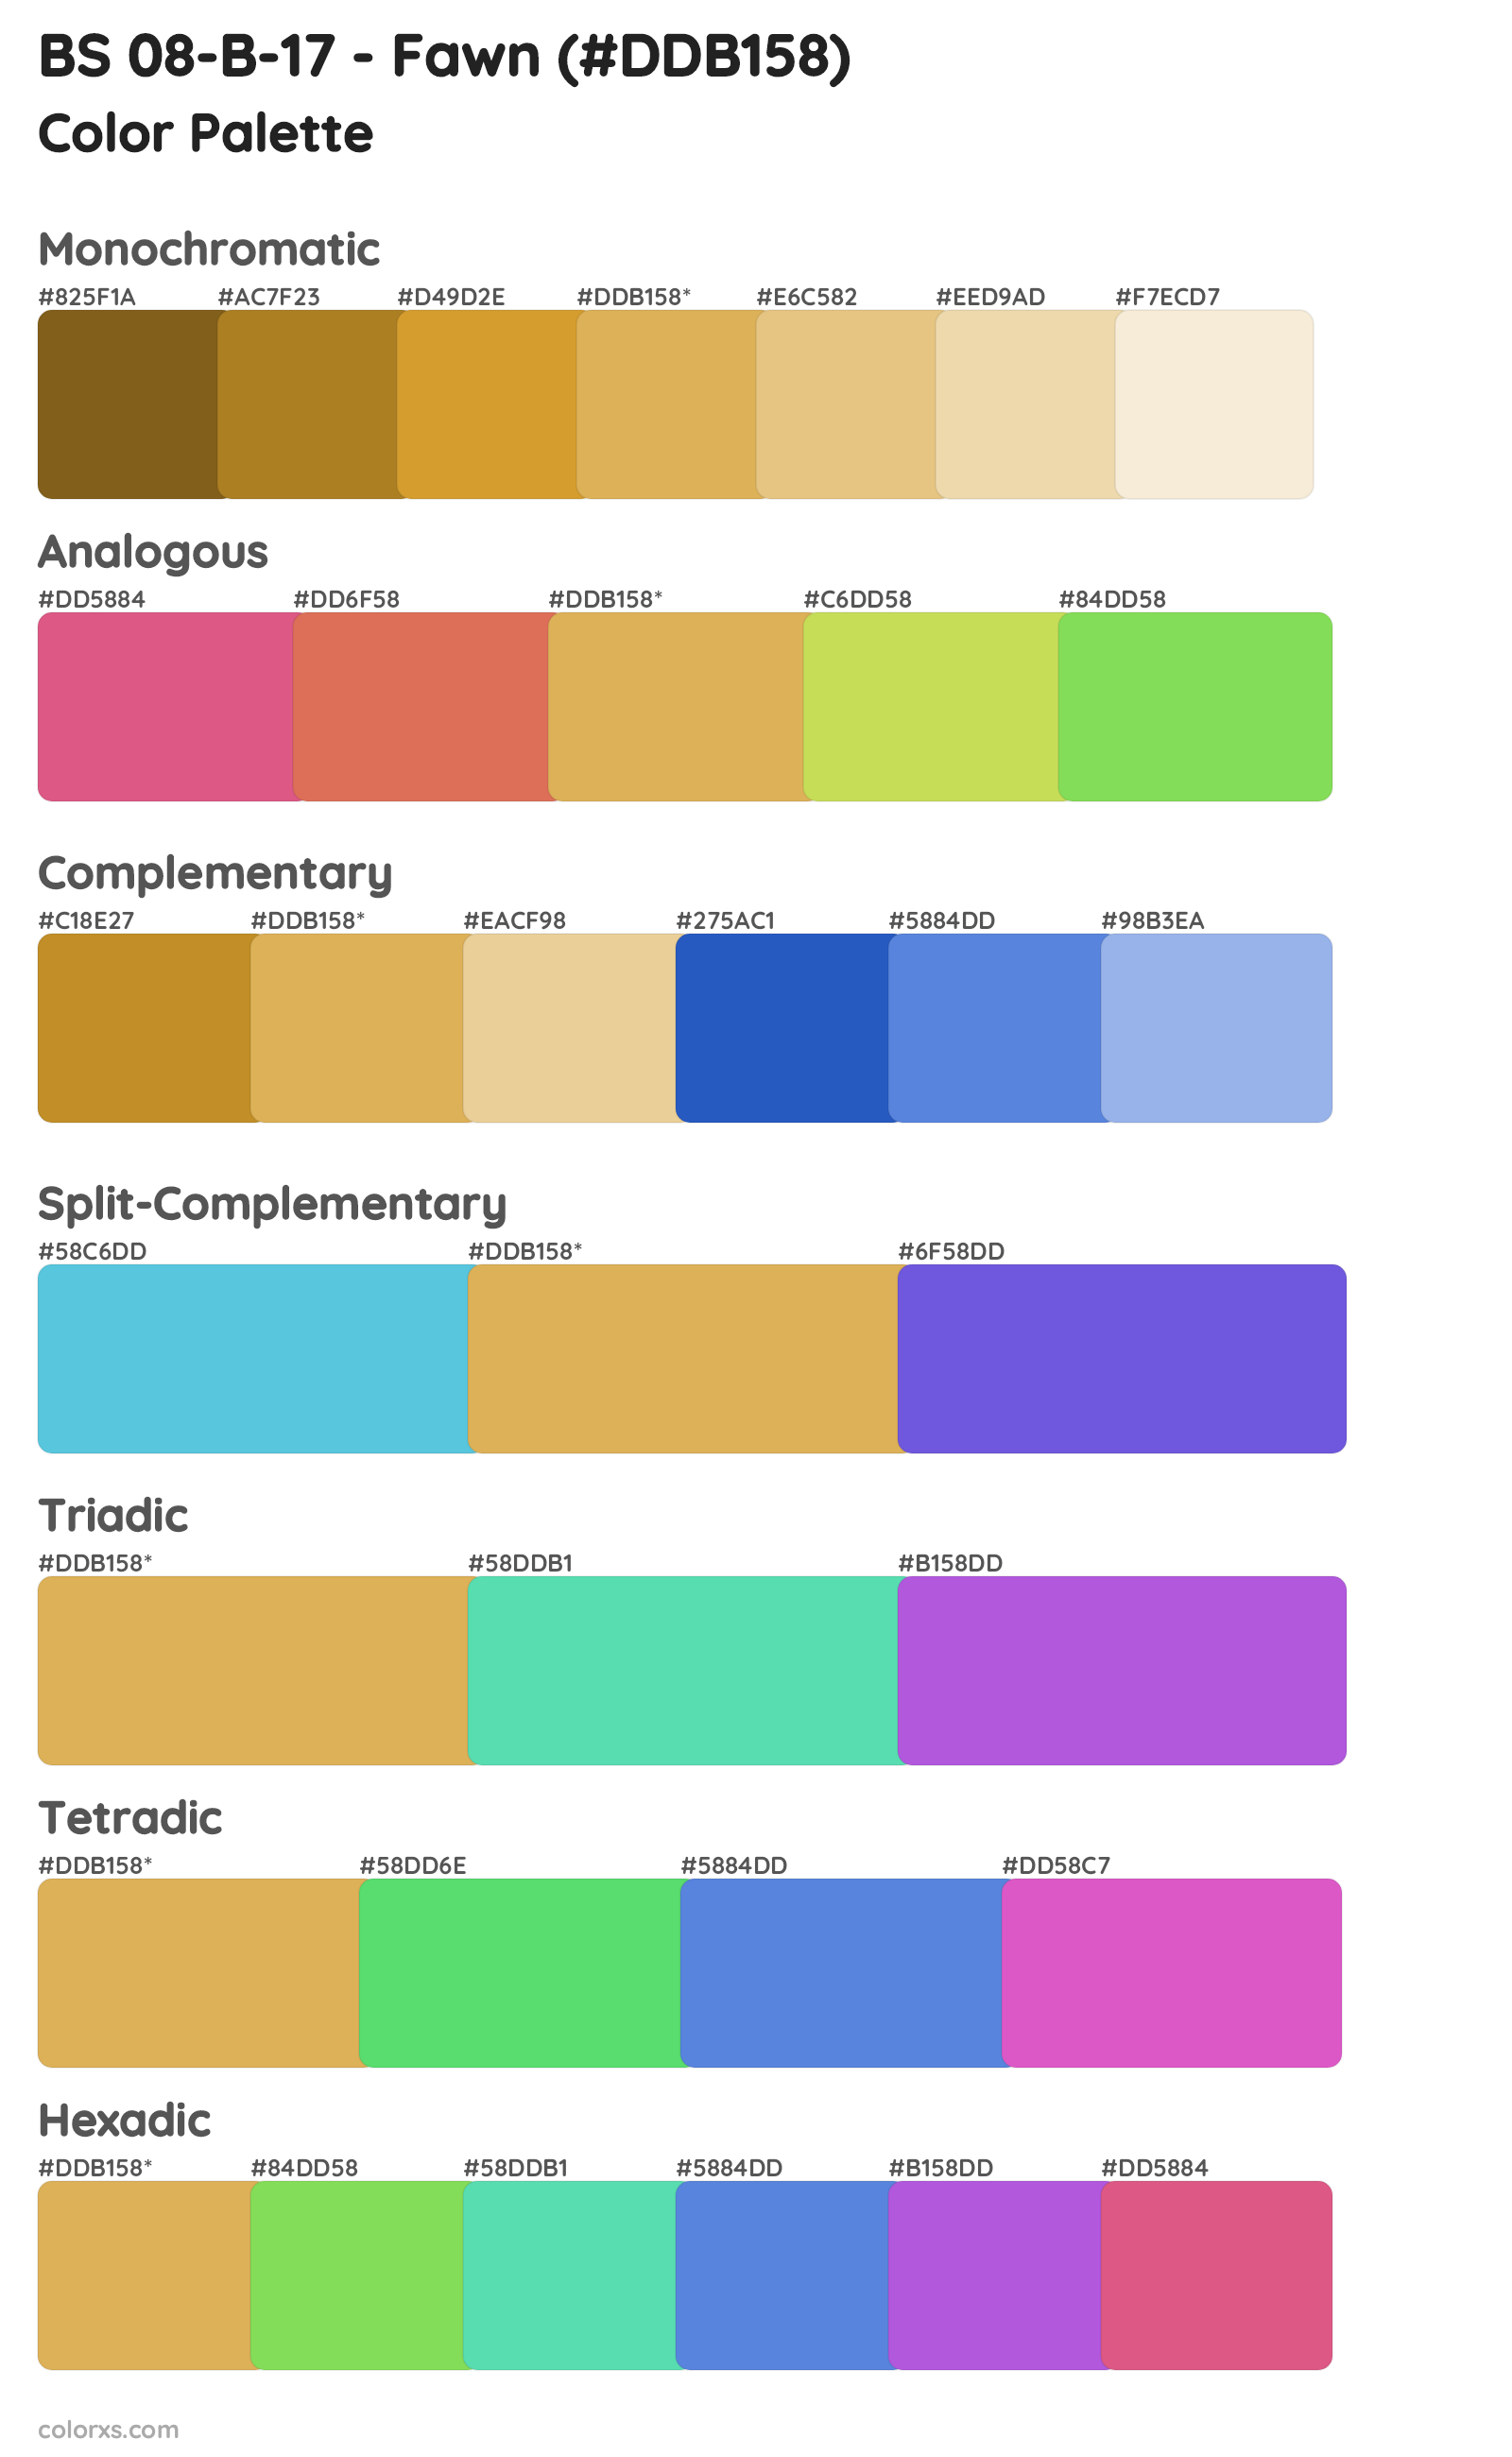 BS 08-B-17 - Fawn Color Scheme Palettes